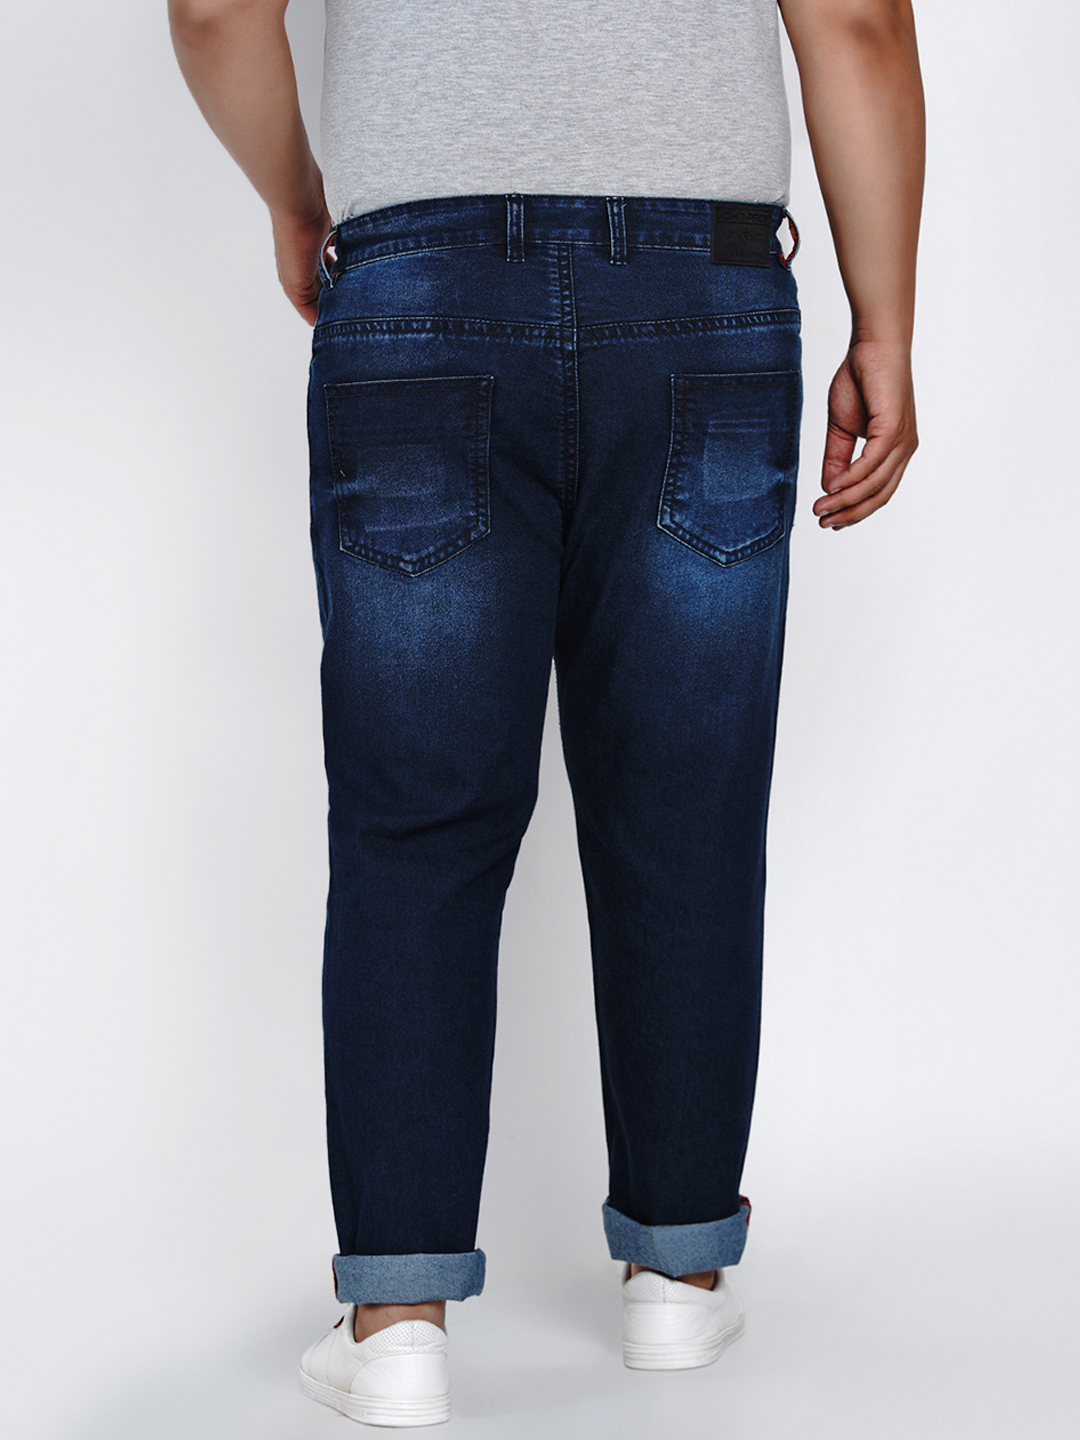 affordables/jeans/JPJ2014/jpj2014-5.jpg